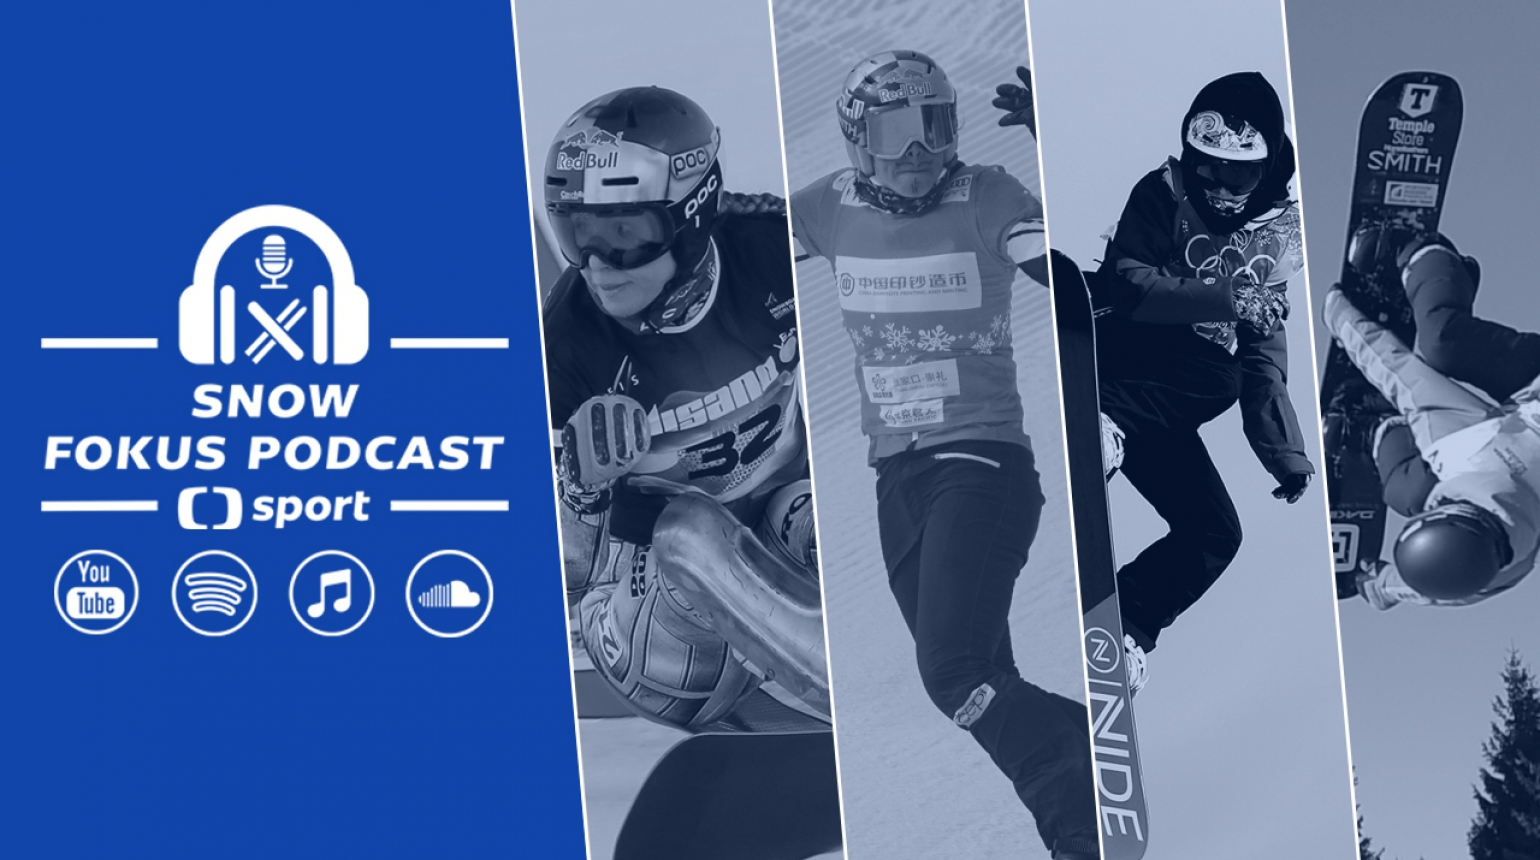 Snow Fokus Podcast: Snowboardový speciál o skvělém návratu Ledecké i zranění Samkové